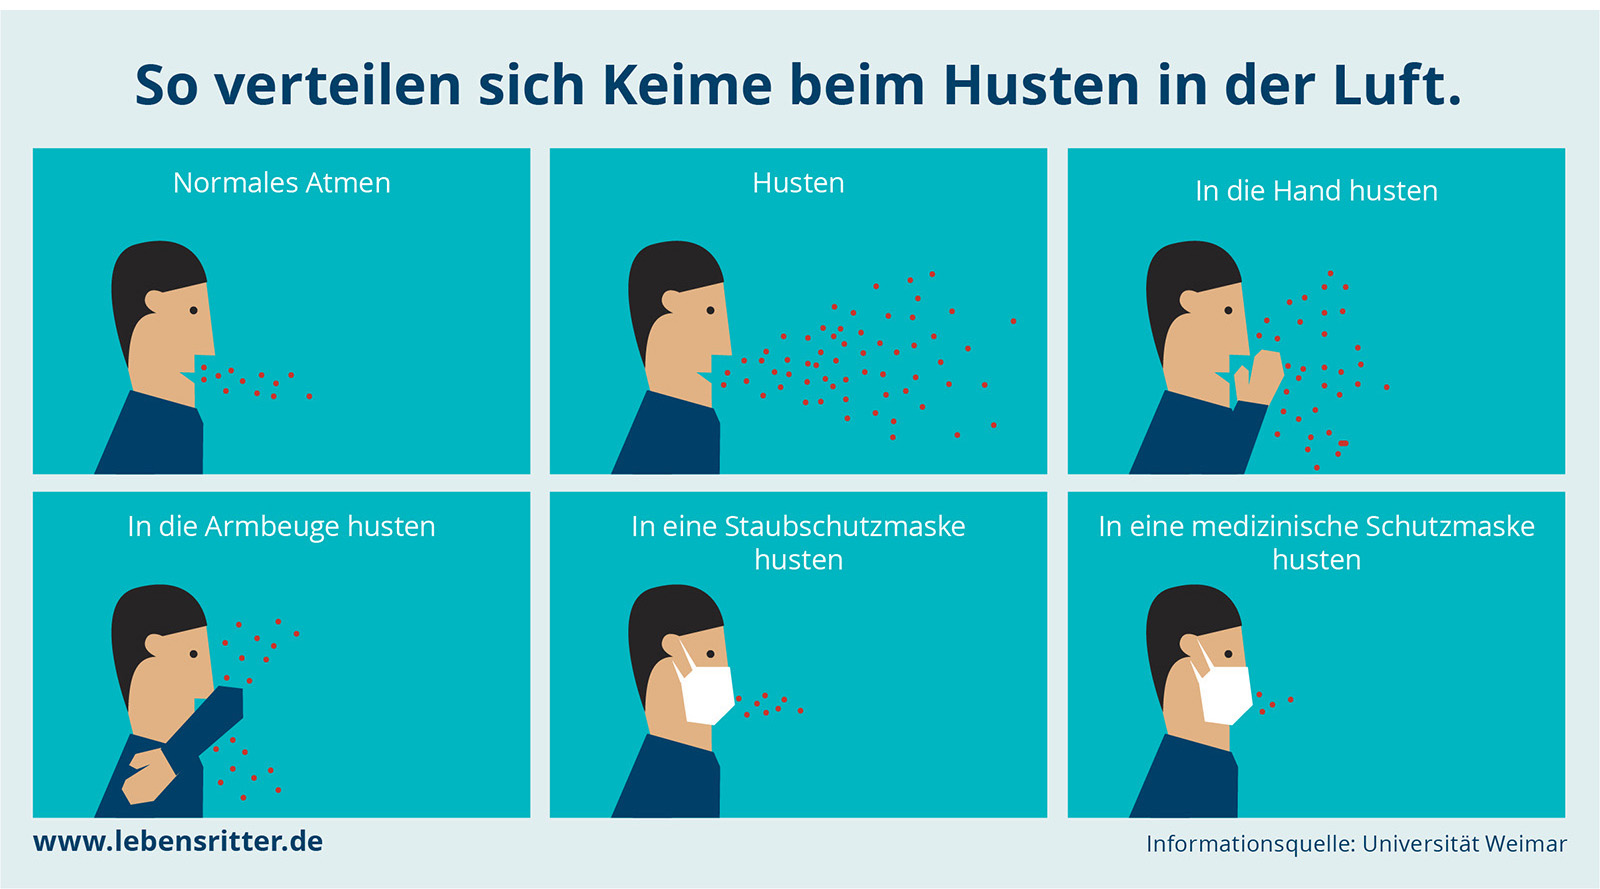 Werbung Lebensritter Netzwerk Organspende NRW Die Werbtätigen Aktion #NurMitMaske Verteilung Keime in der Luft Corona